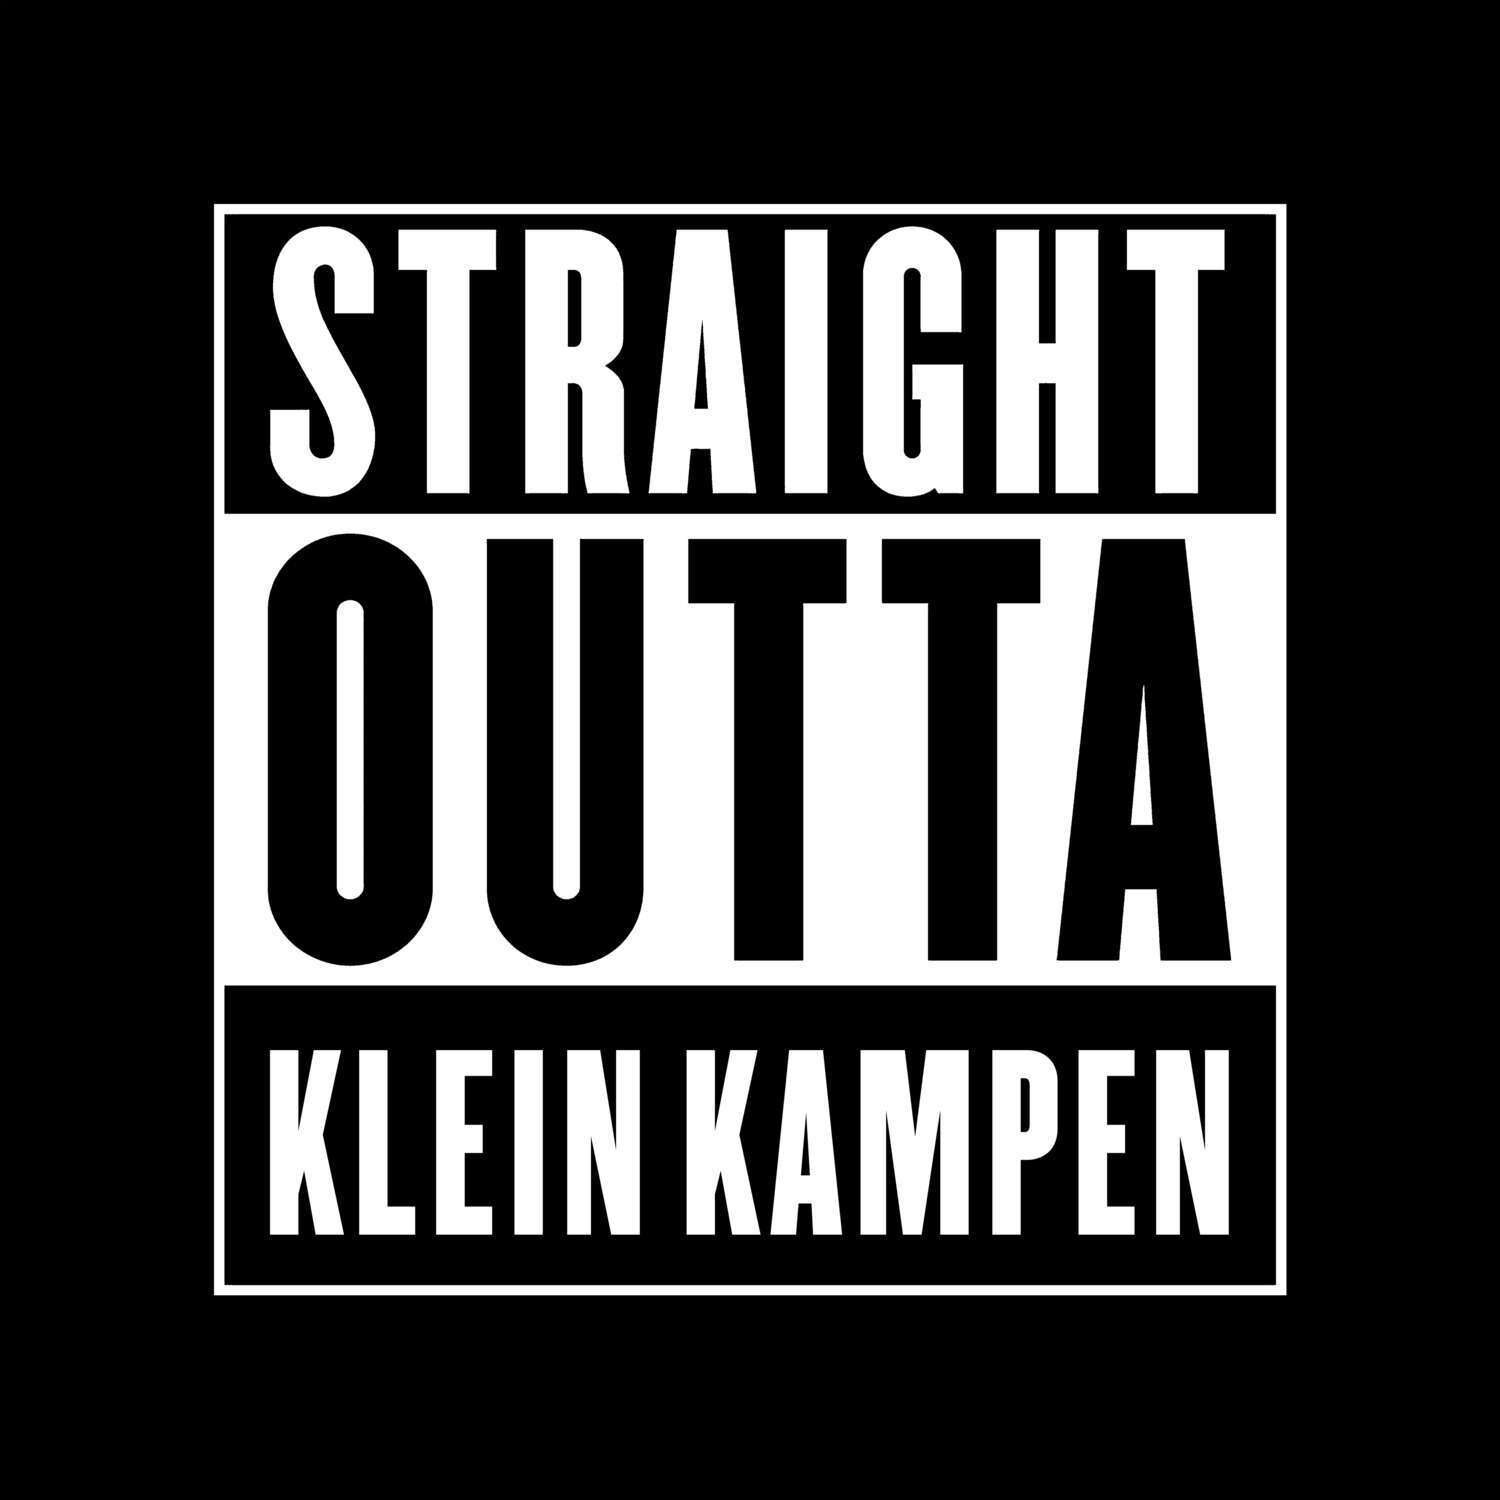 Klein Kampen T-Shirt »Straight Outta«